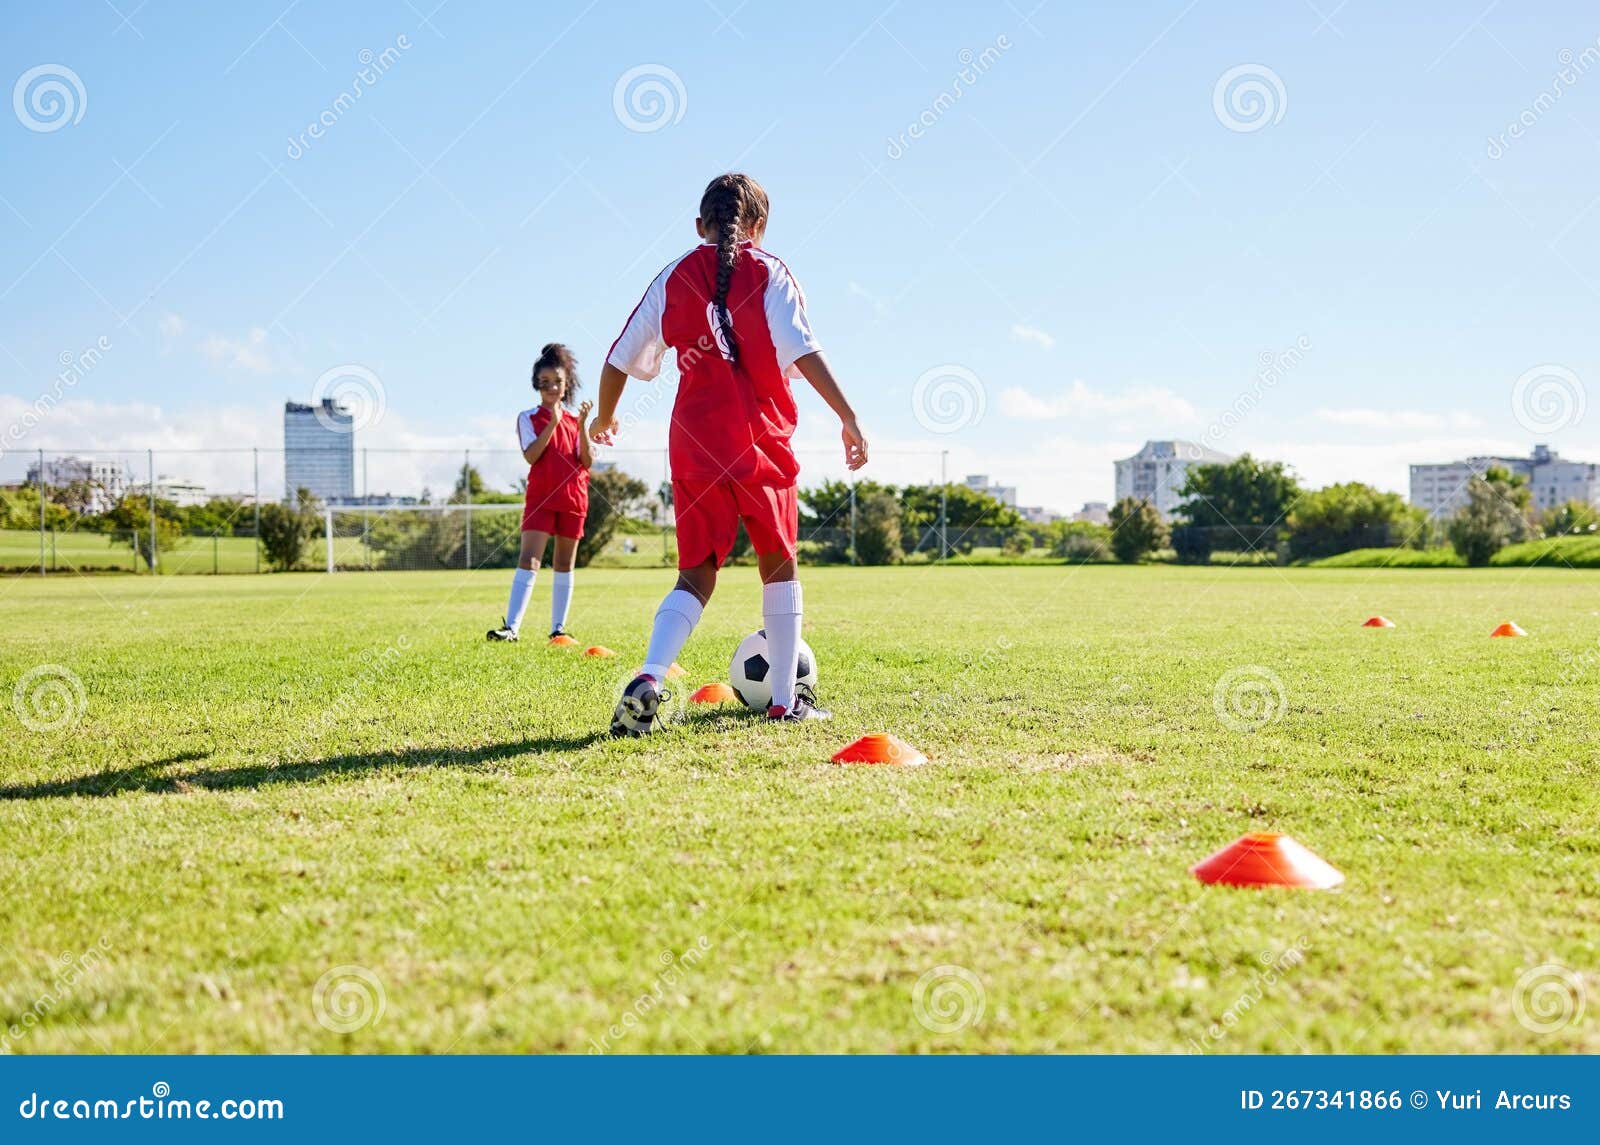 Garotas esportivas passando bola de futebol em campo verde. duas meninas em  roupas esportivas jogando futebol juntos, correndo rápido e  profissionalmente chutando bola. estilo de vida saudável e conceito de  futebol feminino